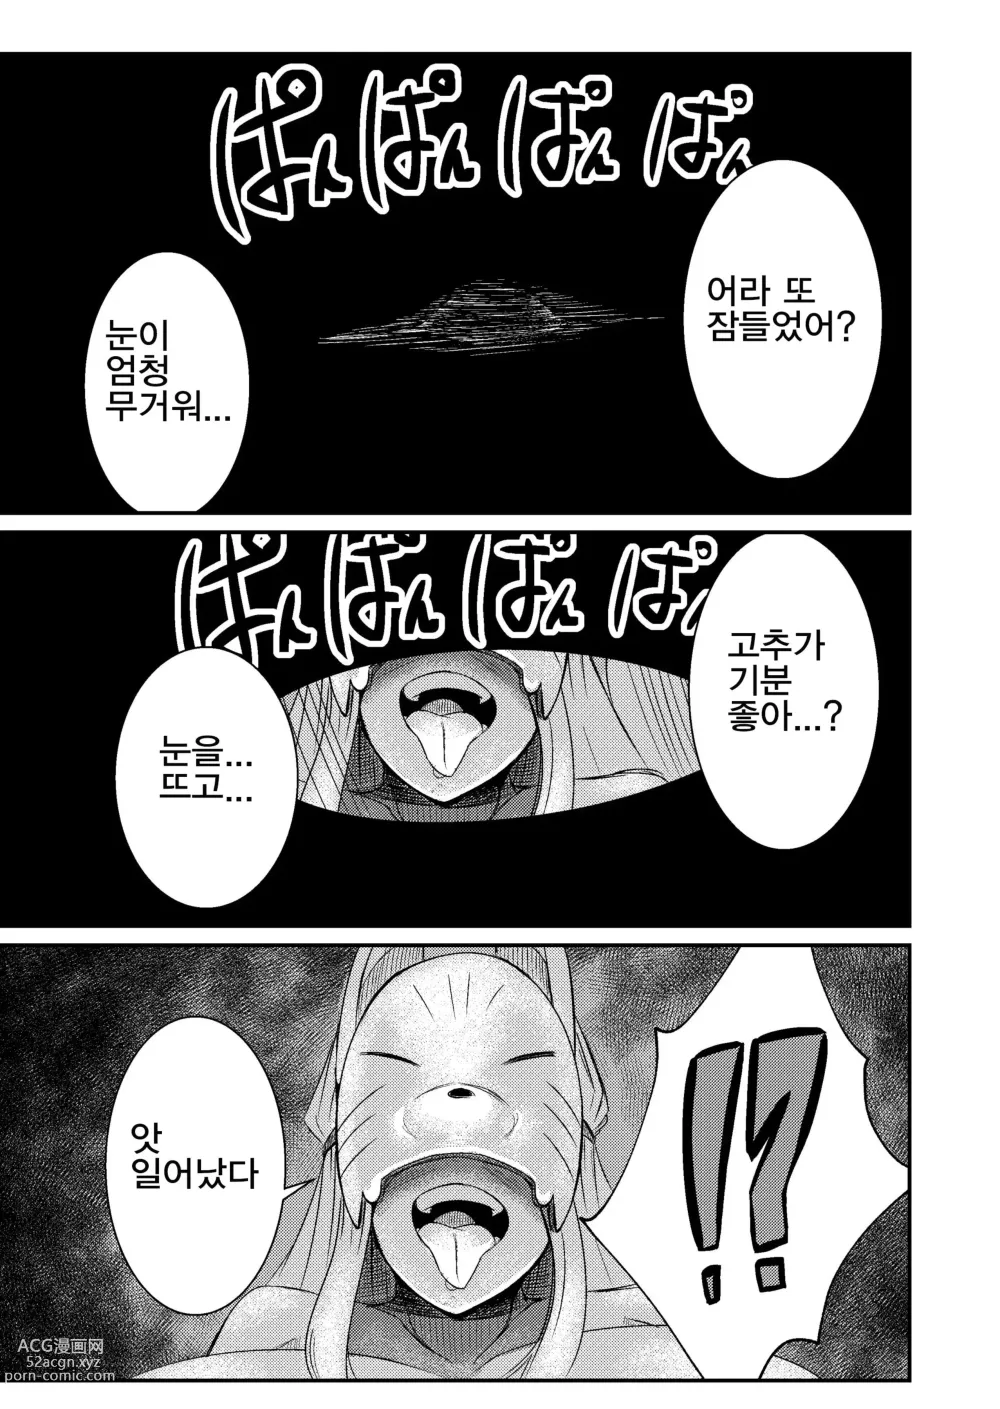 Page 18 of doujinshi Fuuin Hodoitara Damasare Tsukarete Shibo Shirage Jinsei Konna Kotonara Tokanakya Yokatta